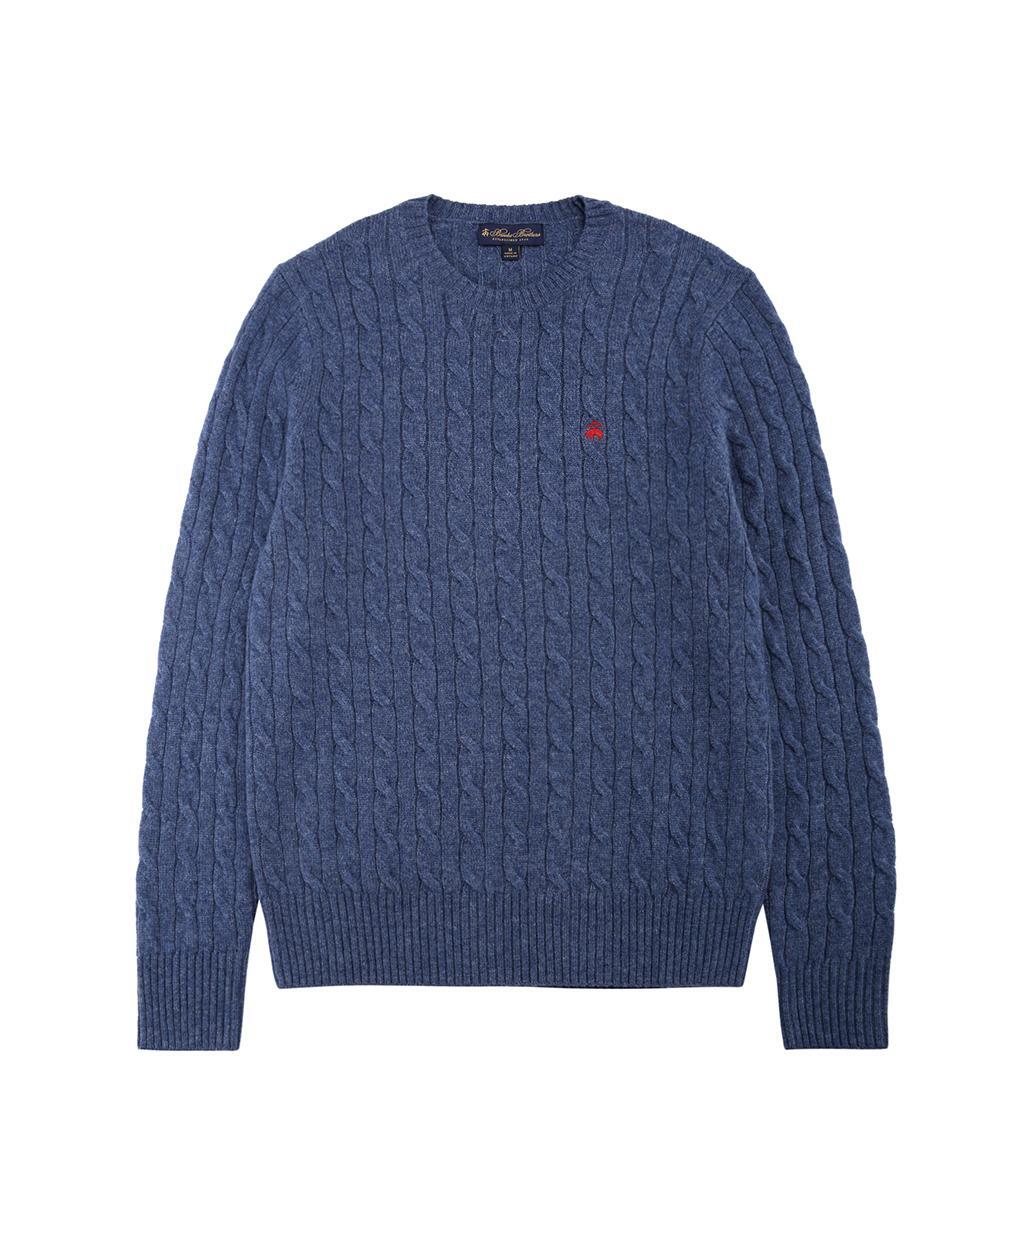 램스울 케이블 로고 스웨터 (다크 블루)